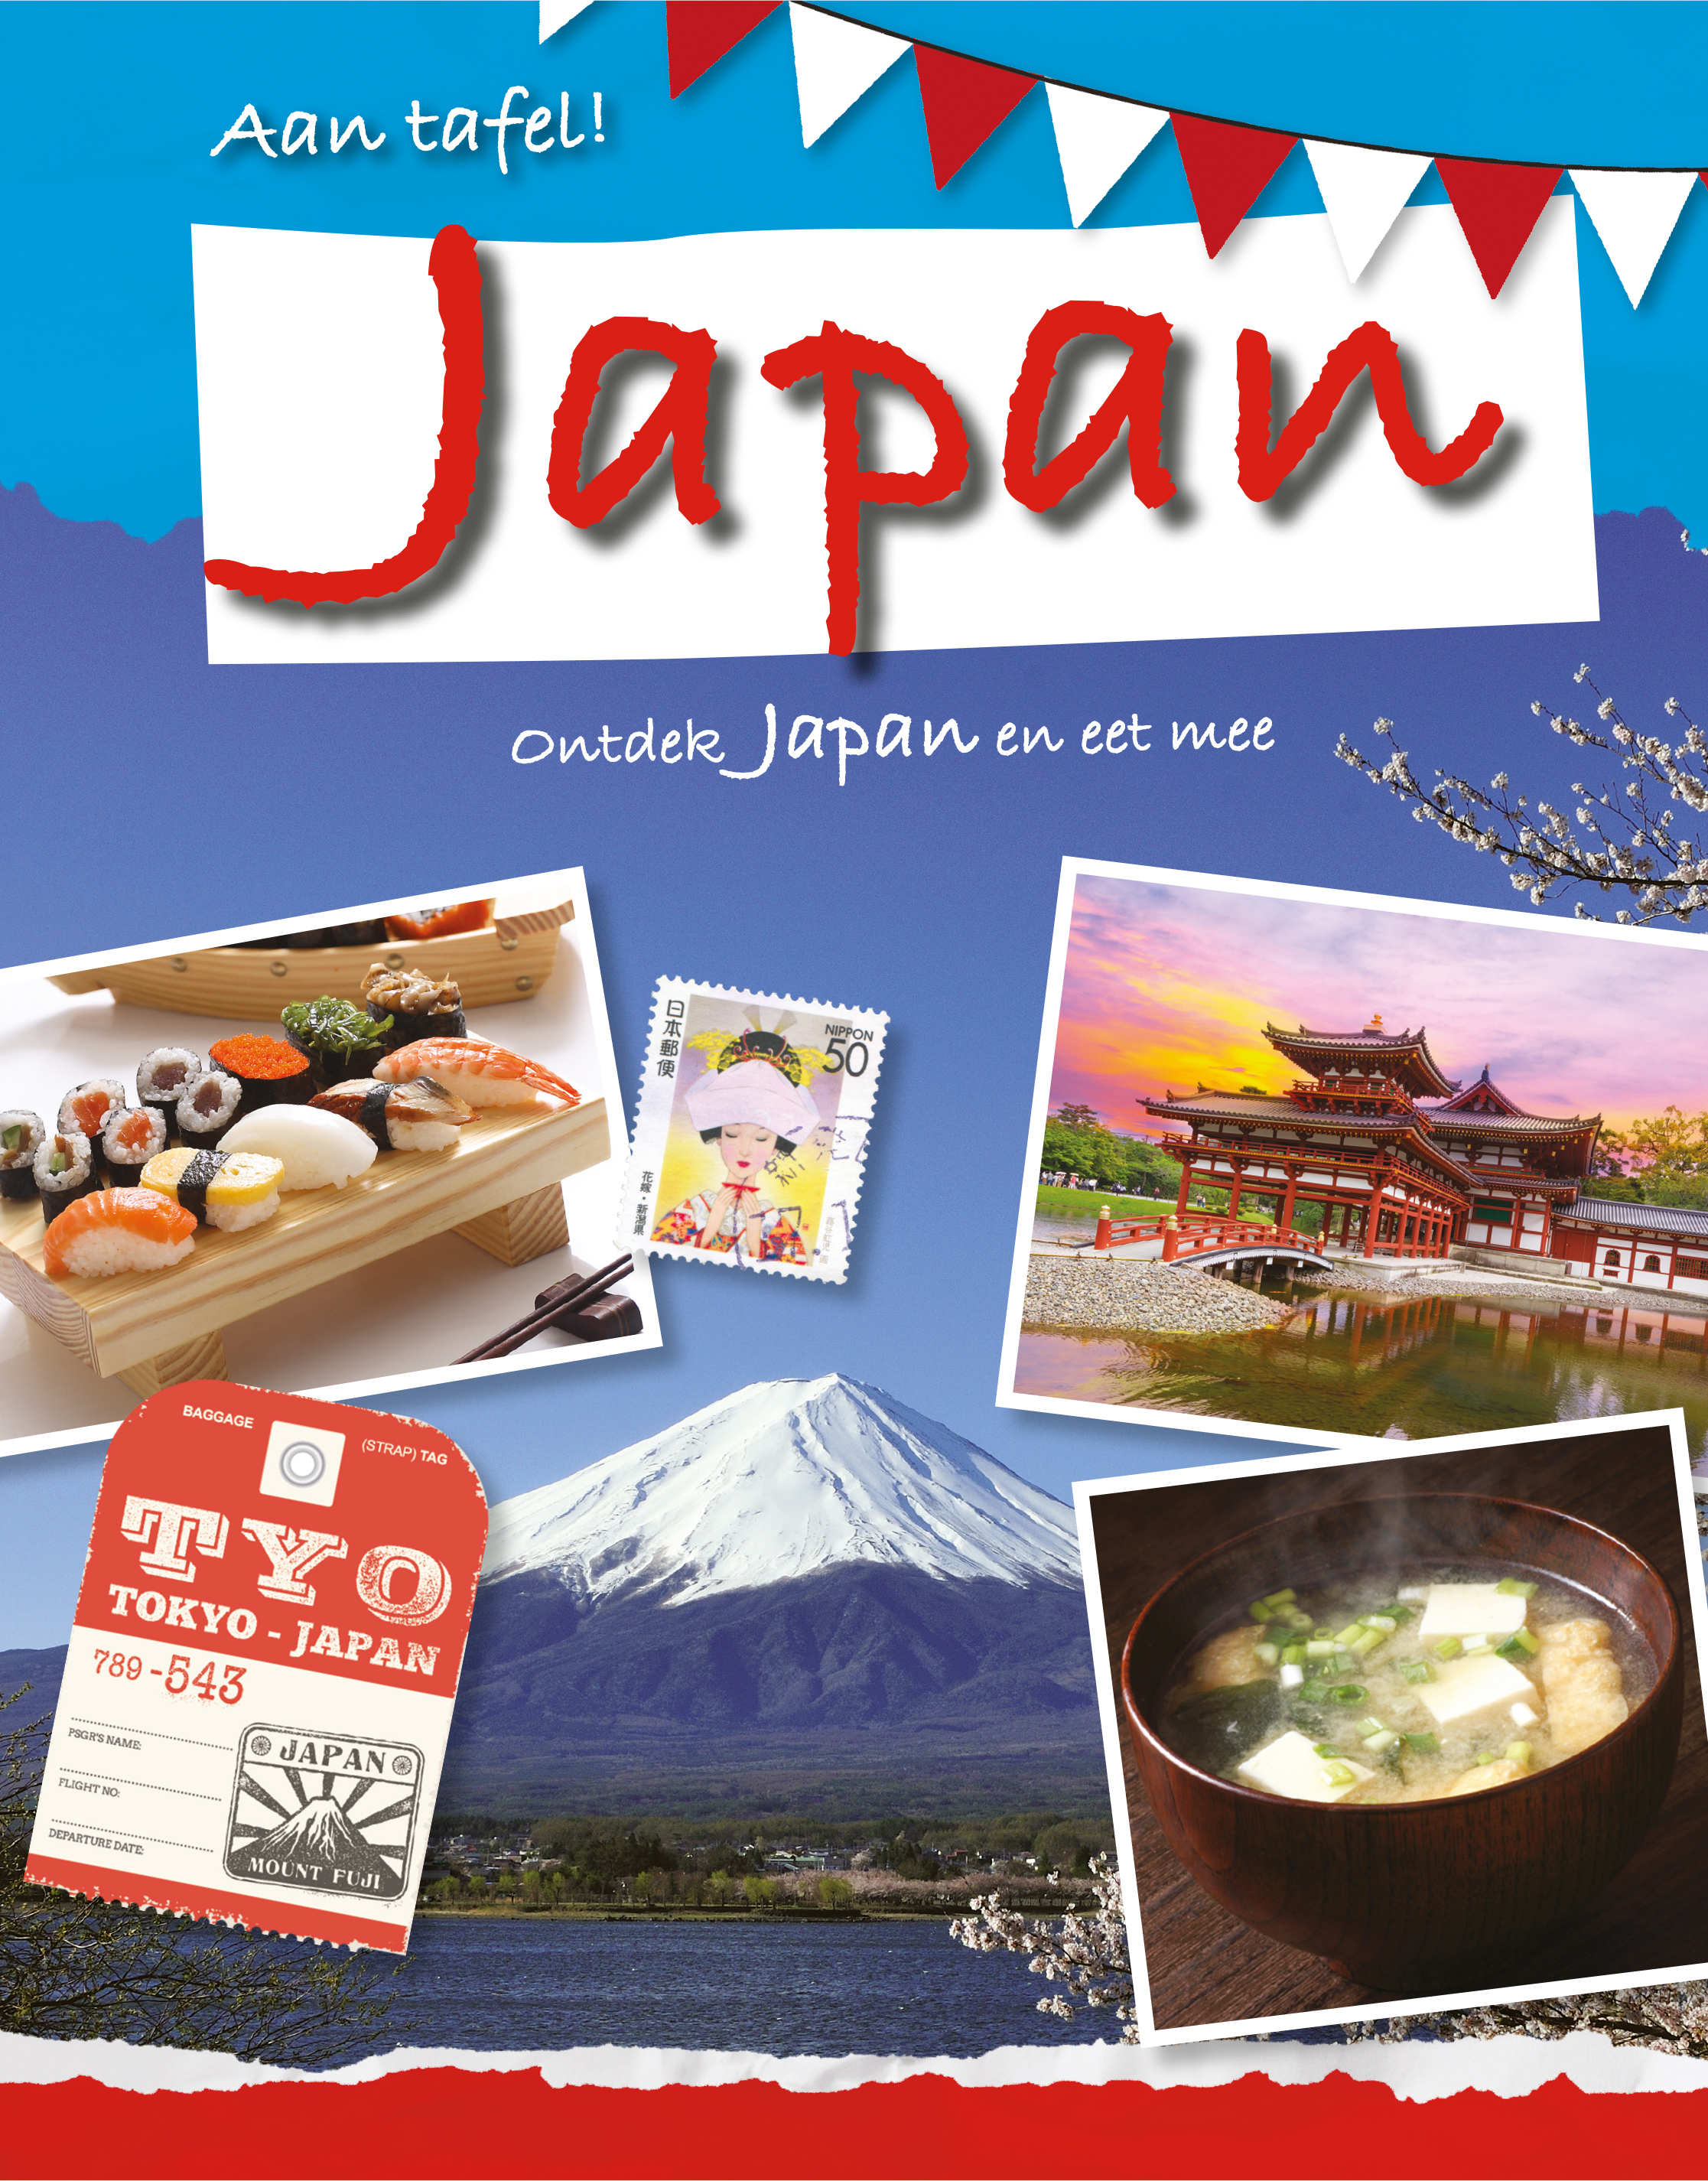 CNBATF004 Japan - ontdek Japan en eet mee